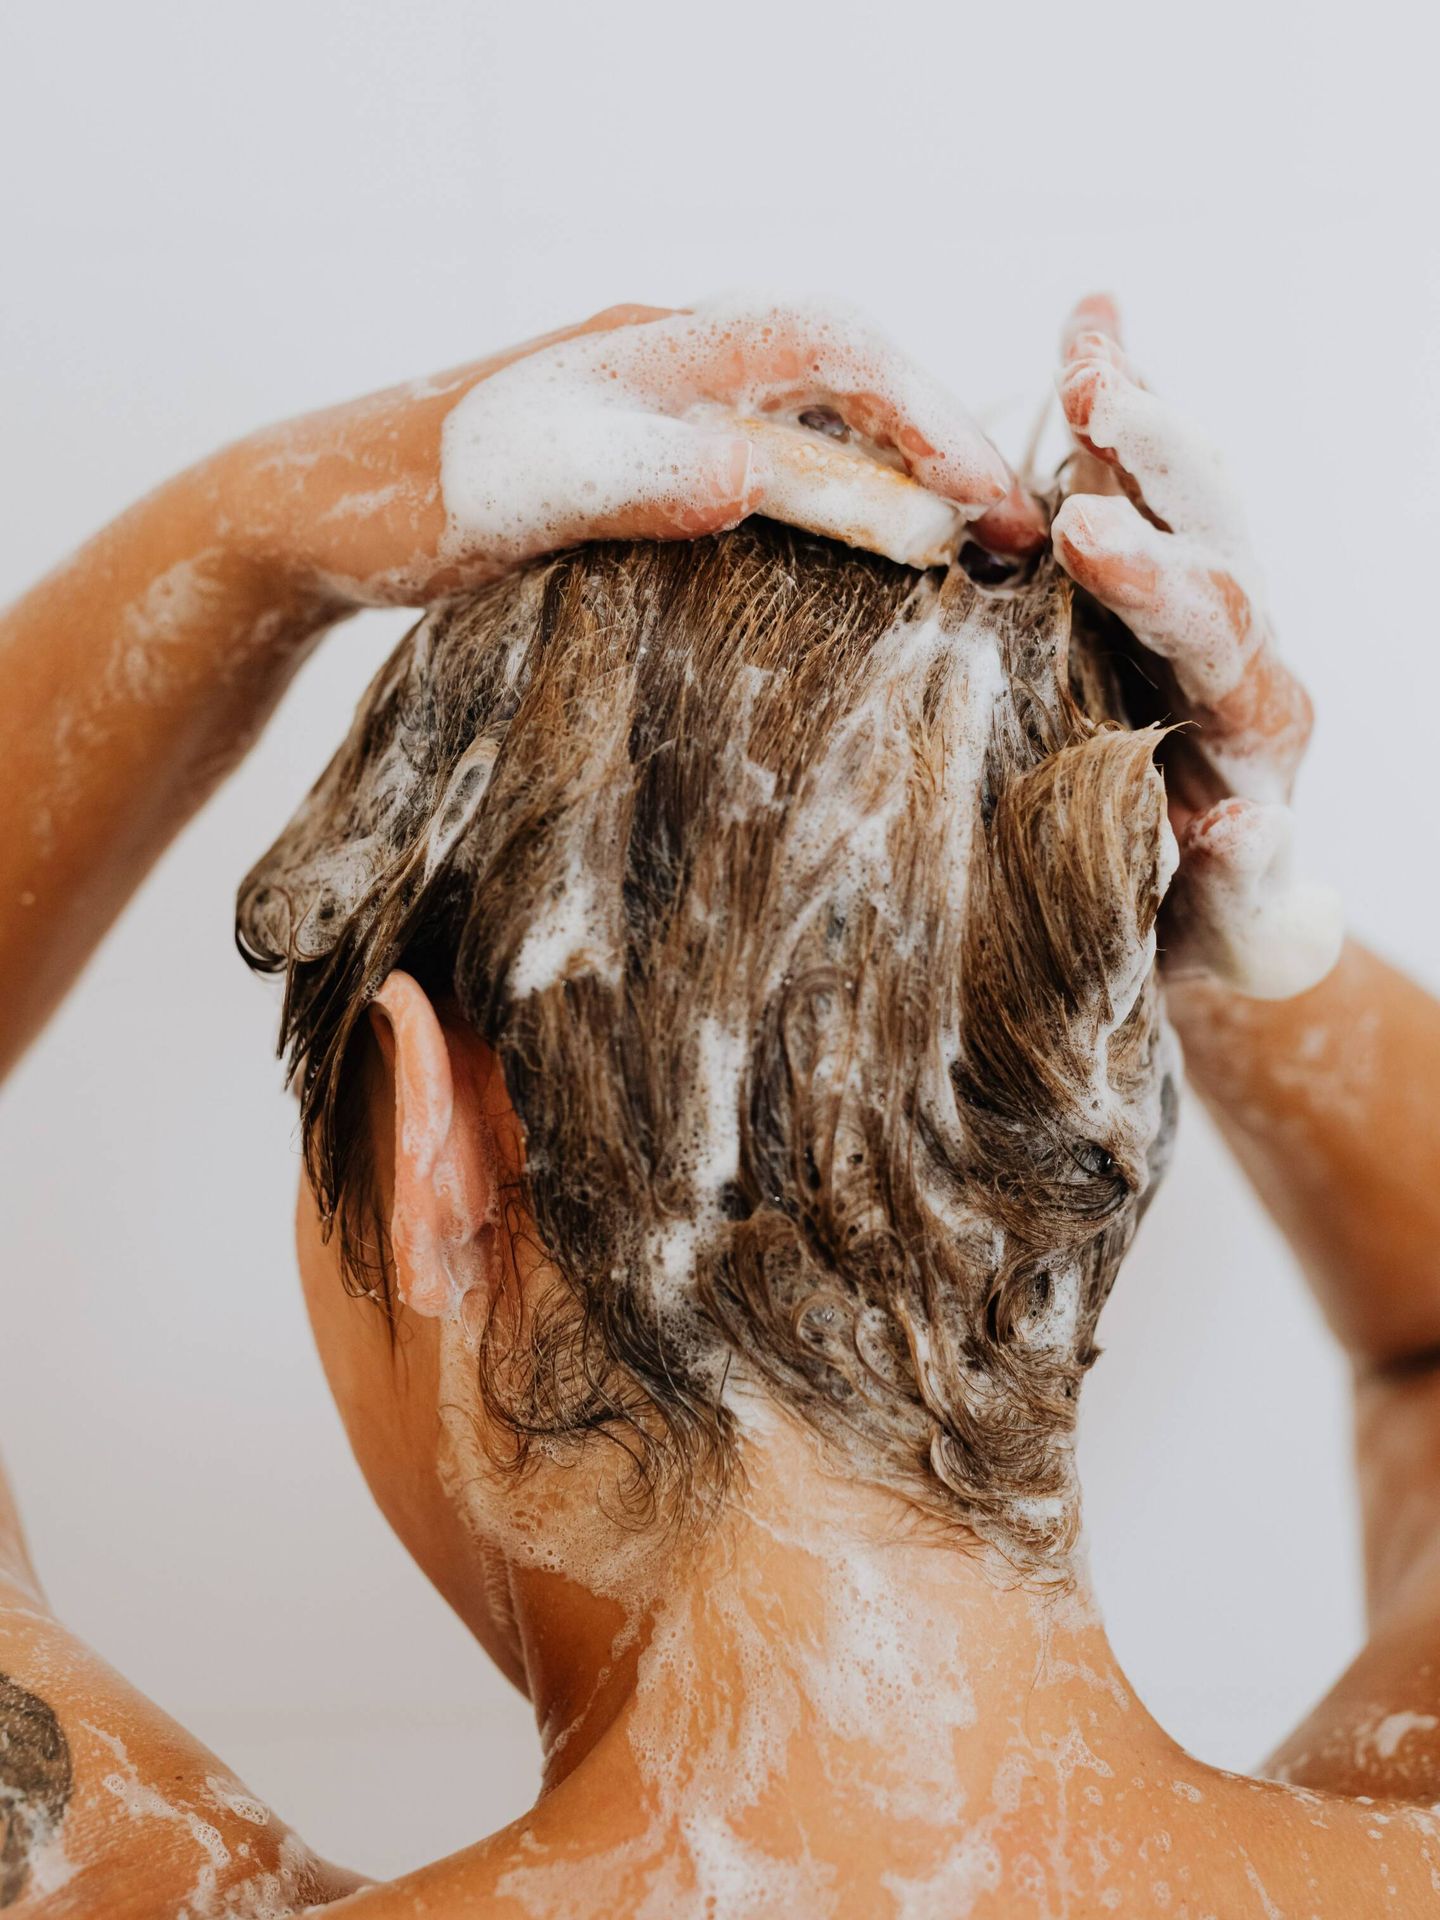 Aplica las fórmulas con cafeína con un masaje para estimular al cuero cabelludo y mejorar la penetración de los activos. (Karolina Grabowska para Pexels)